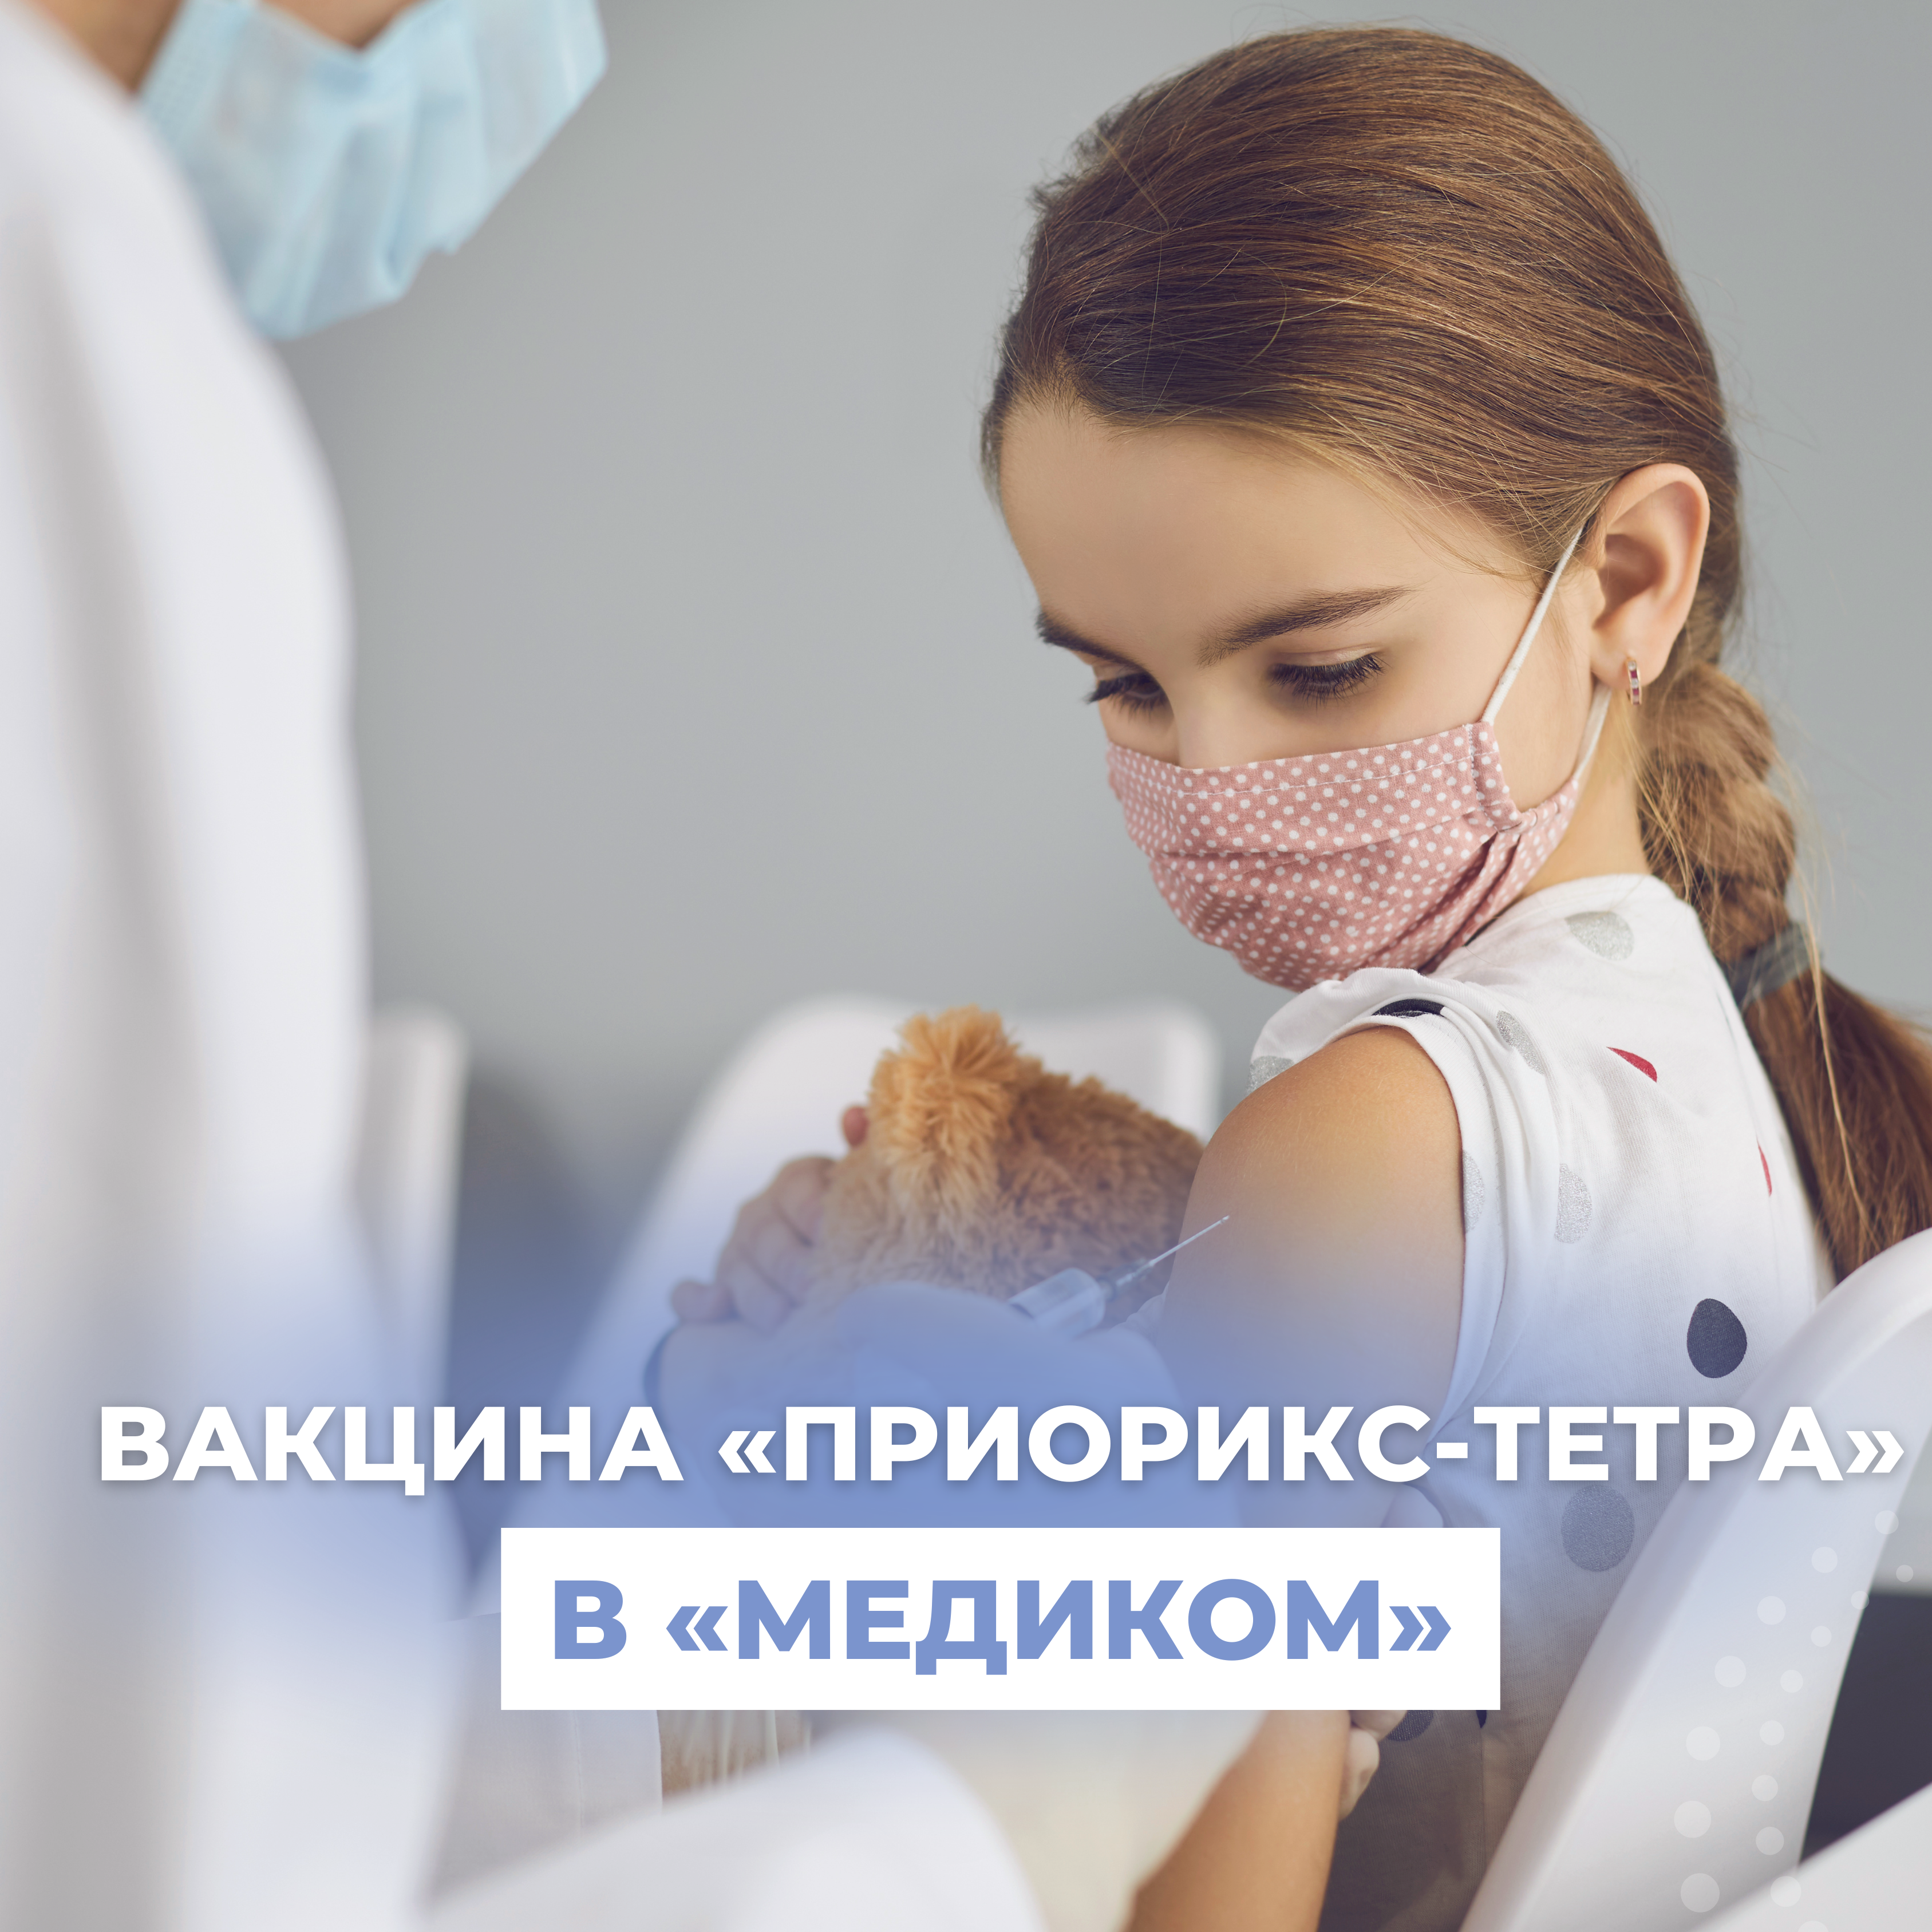 Новая уникальная вакцина "Приорикс-Тетра" в "Медиком"